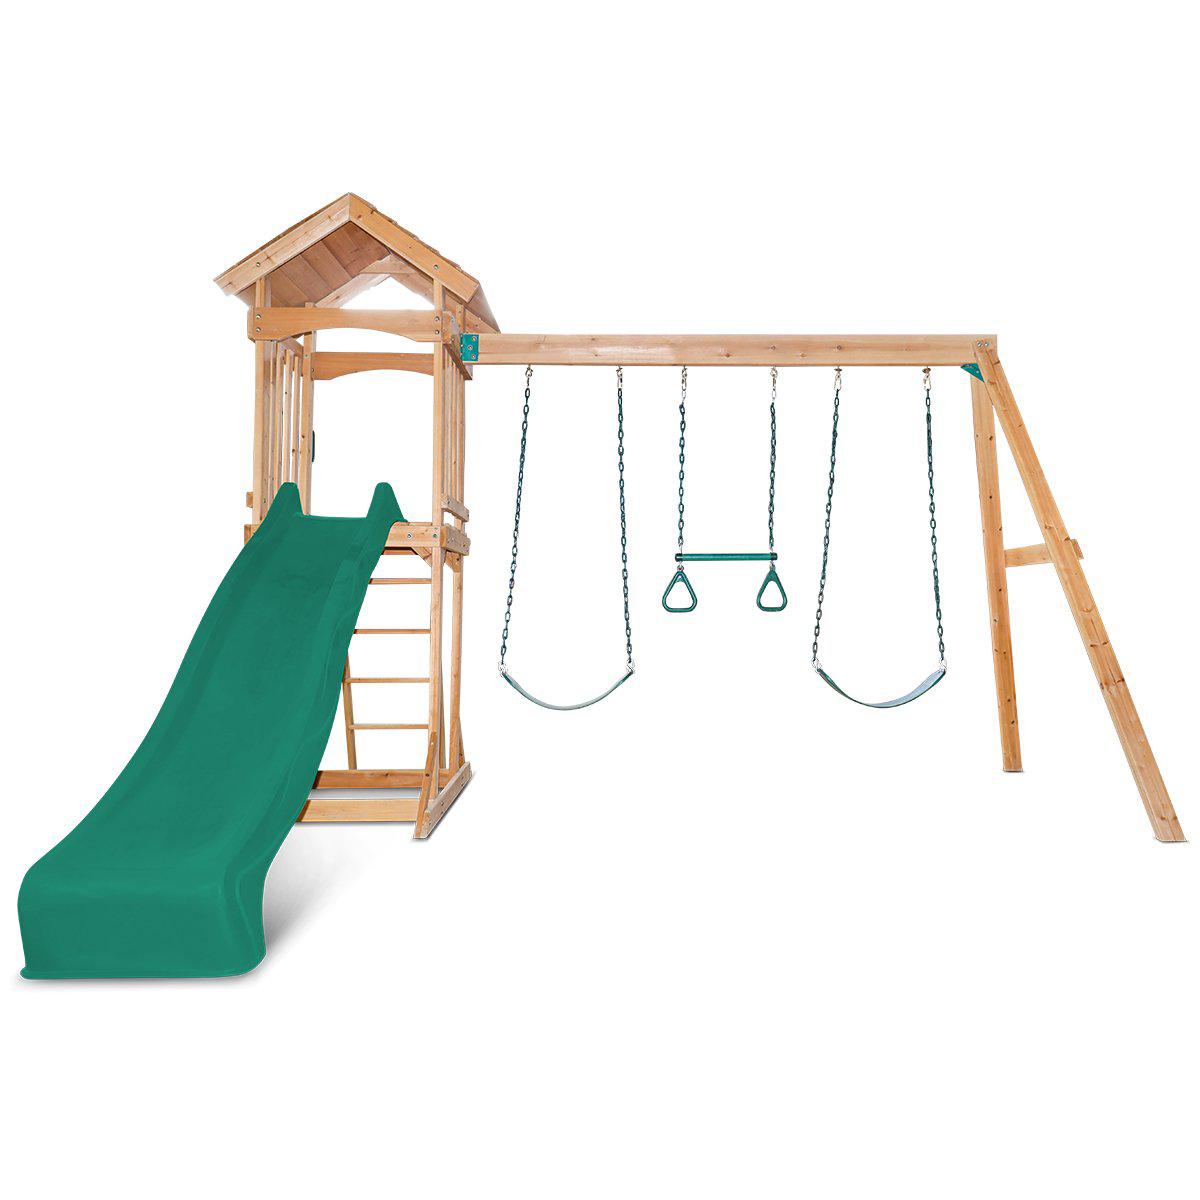 Get Albert Park Swing Set with Slide: Exciting Outdoor Adventures